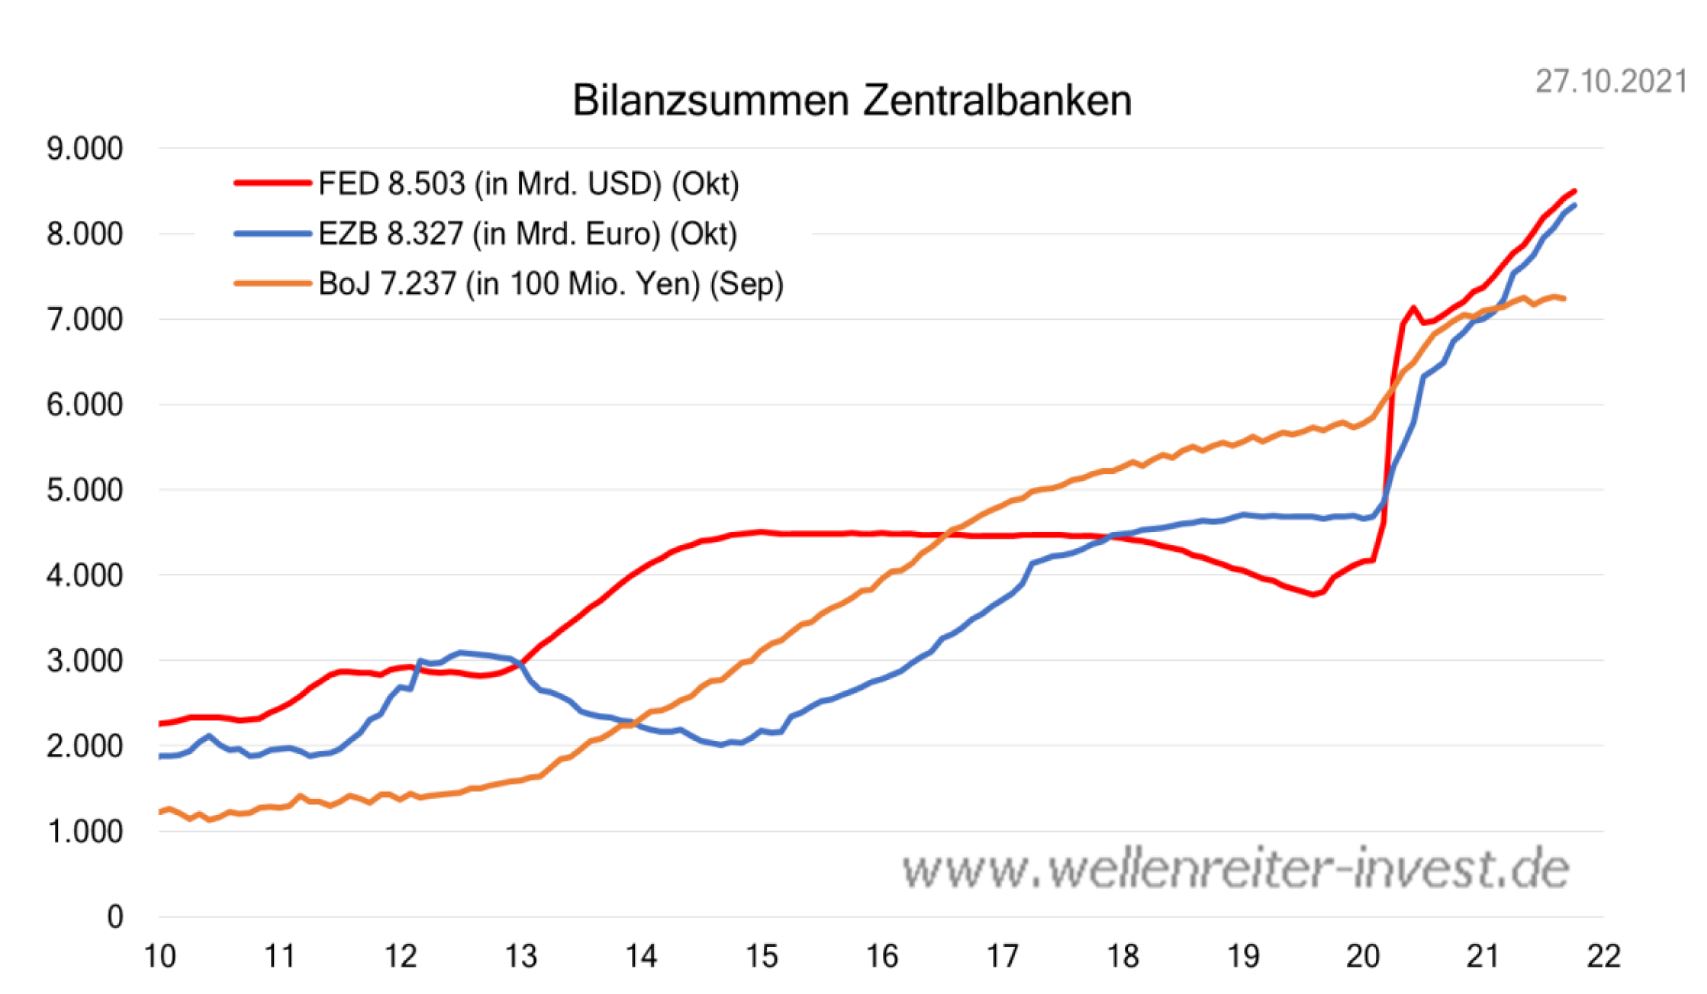 IhrKonzept_Erfolgreich-Geld-anlegen_Bilanzsumme-Fed-EZB-BoJ_2010-bis-2021